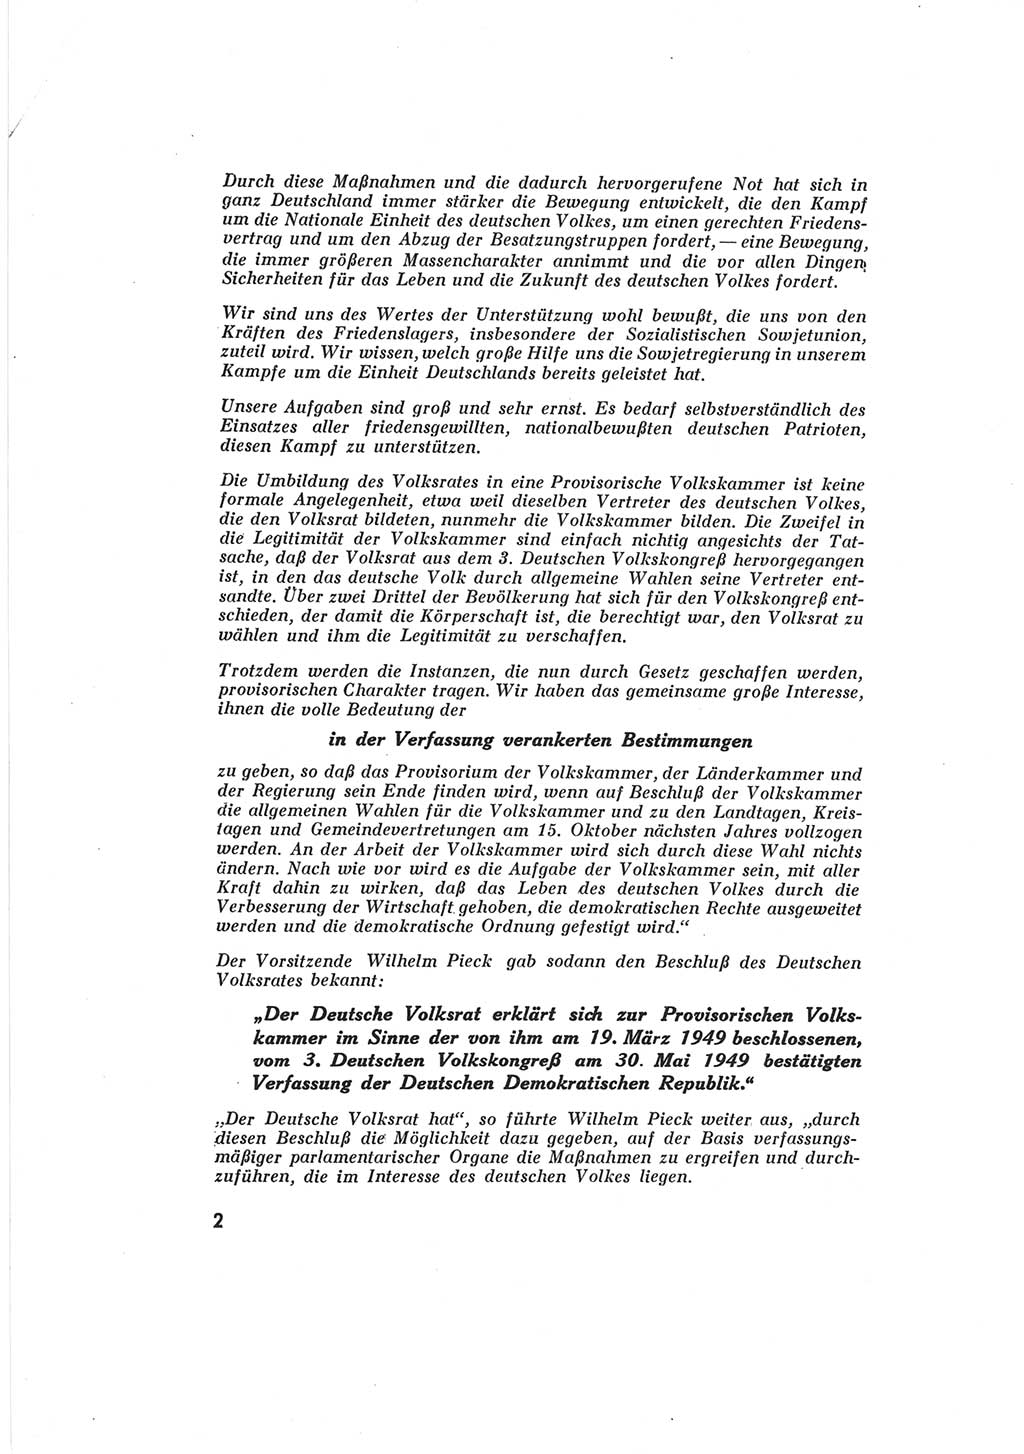 Provisorische Volkskammer (VK) der Deutschen Demokratischen Republik (DDR) 1949-1950, Dokument 4 (Prov. VK DDR 1949-1950, Dok. 4)